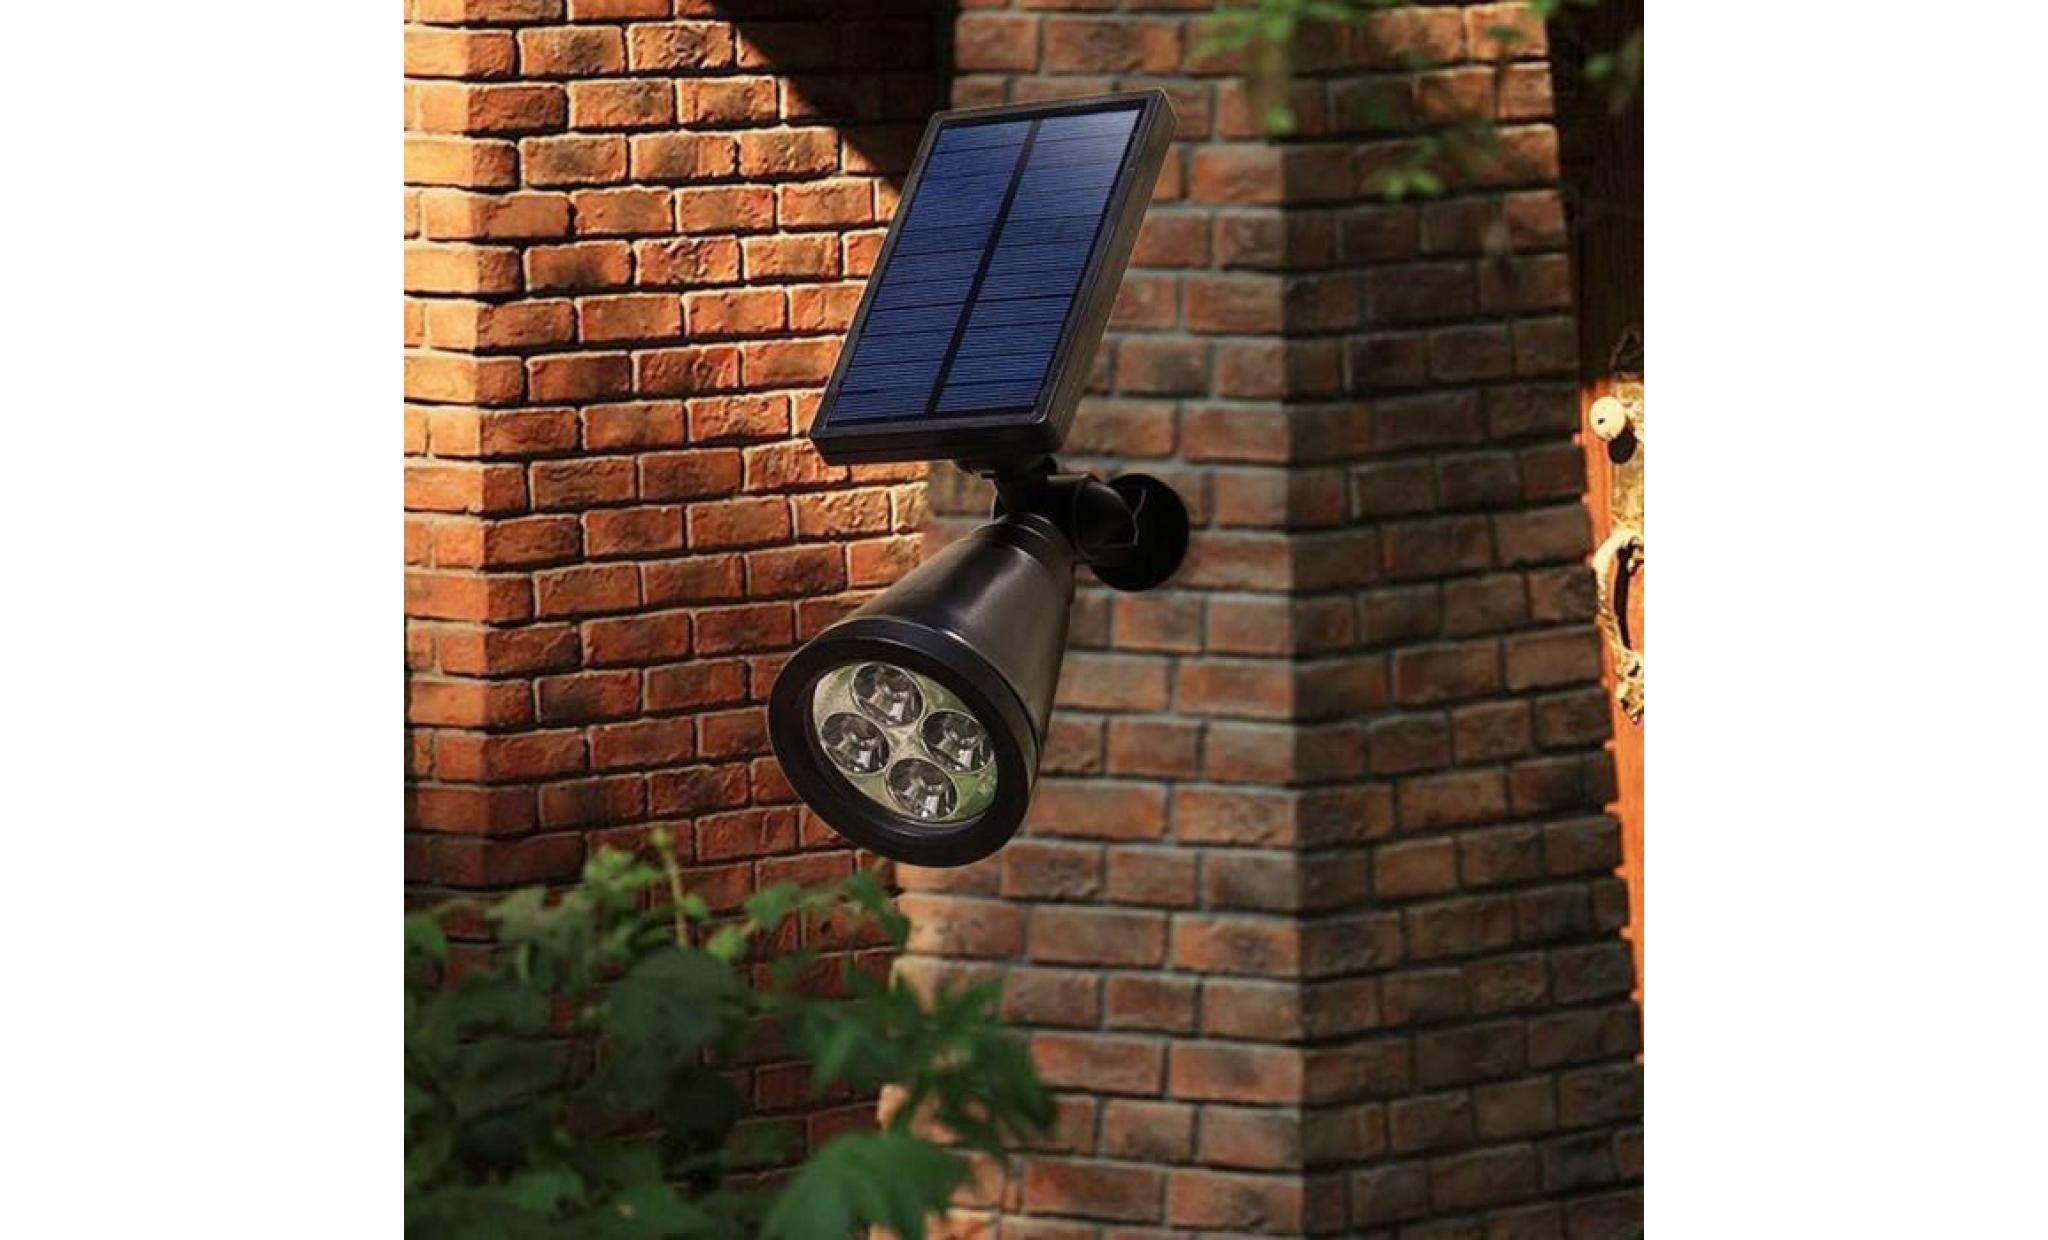 10x solar spot light projecteur extérieure 4 led lampes solaire etanche maison jardin pelouse eclairage lumière pas cher